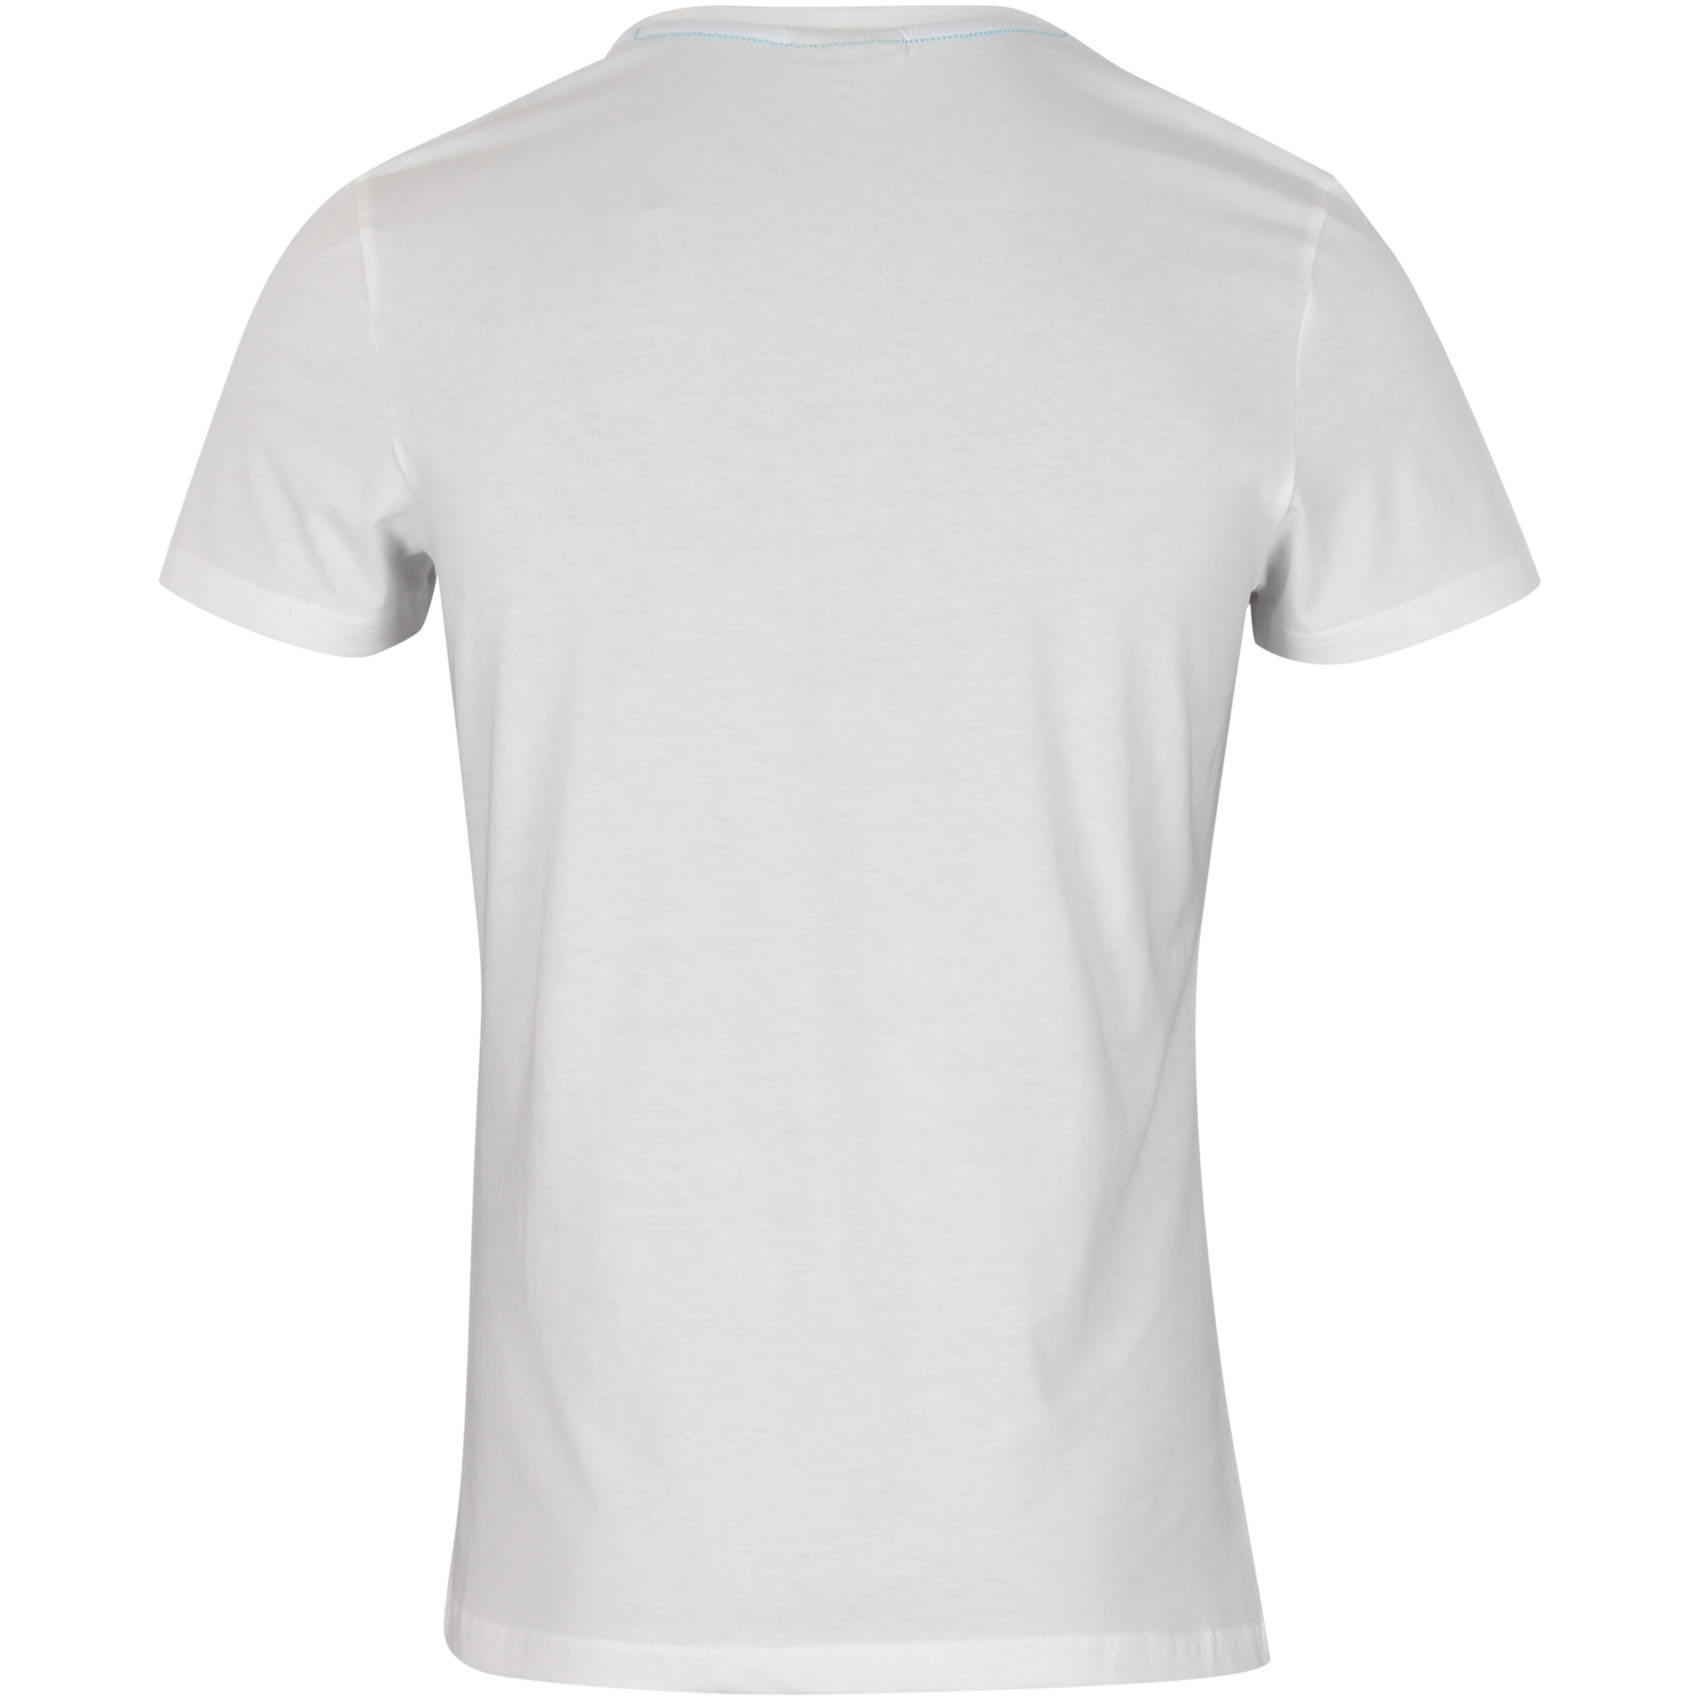 Hummel T-Shirt Hexagon - Weiß/Lila, Gr. XS 